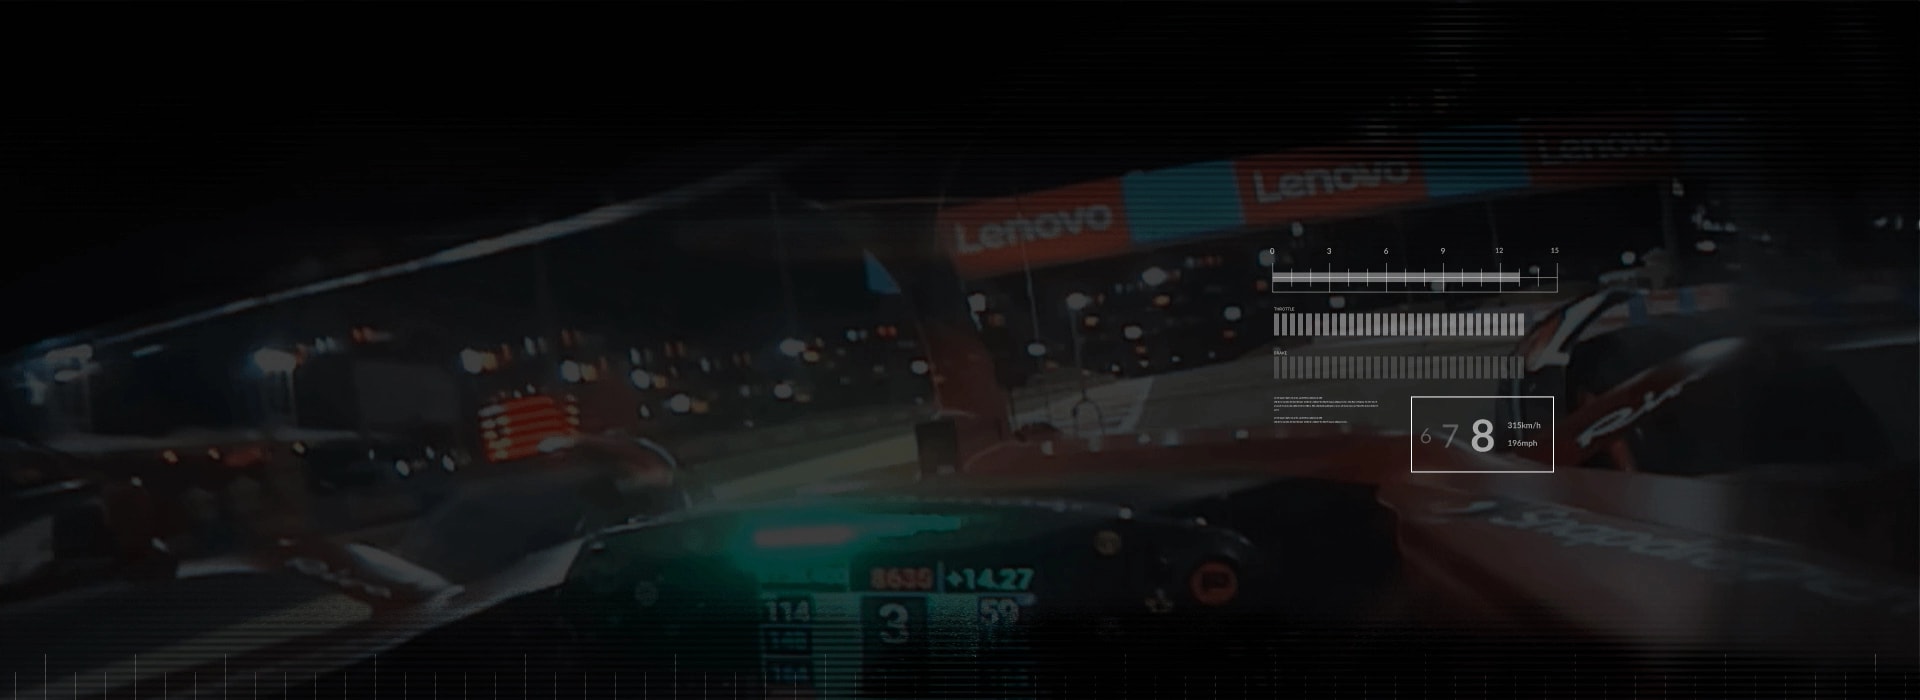 Pistte Lenovo afişlerini geçen bir F1 yarış arabası sürücüsünün içeriden görünümü